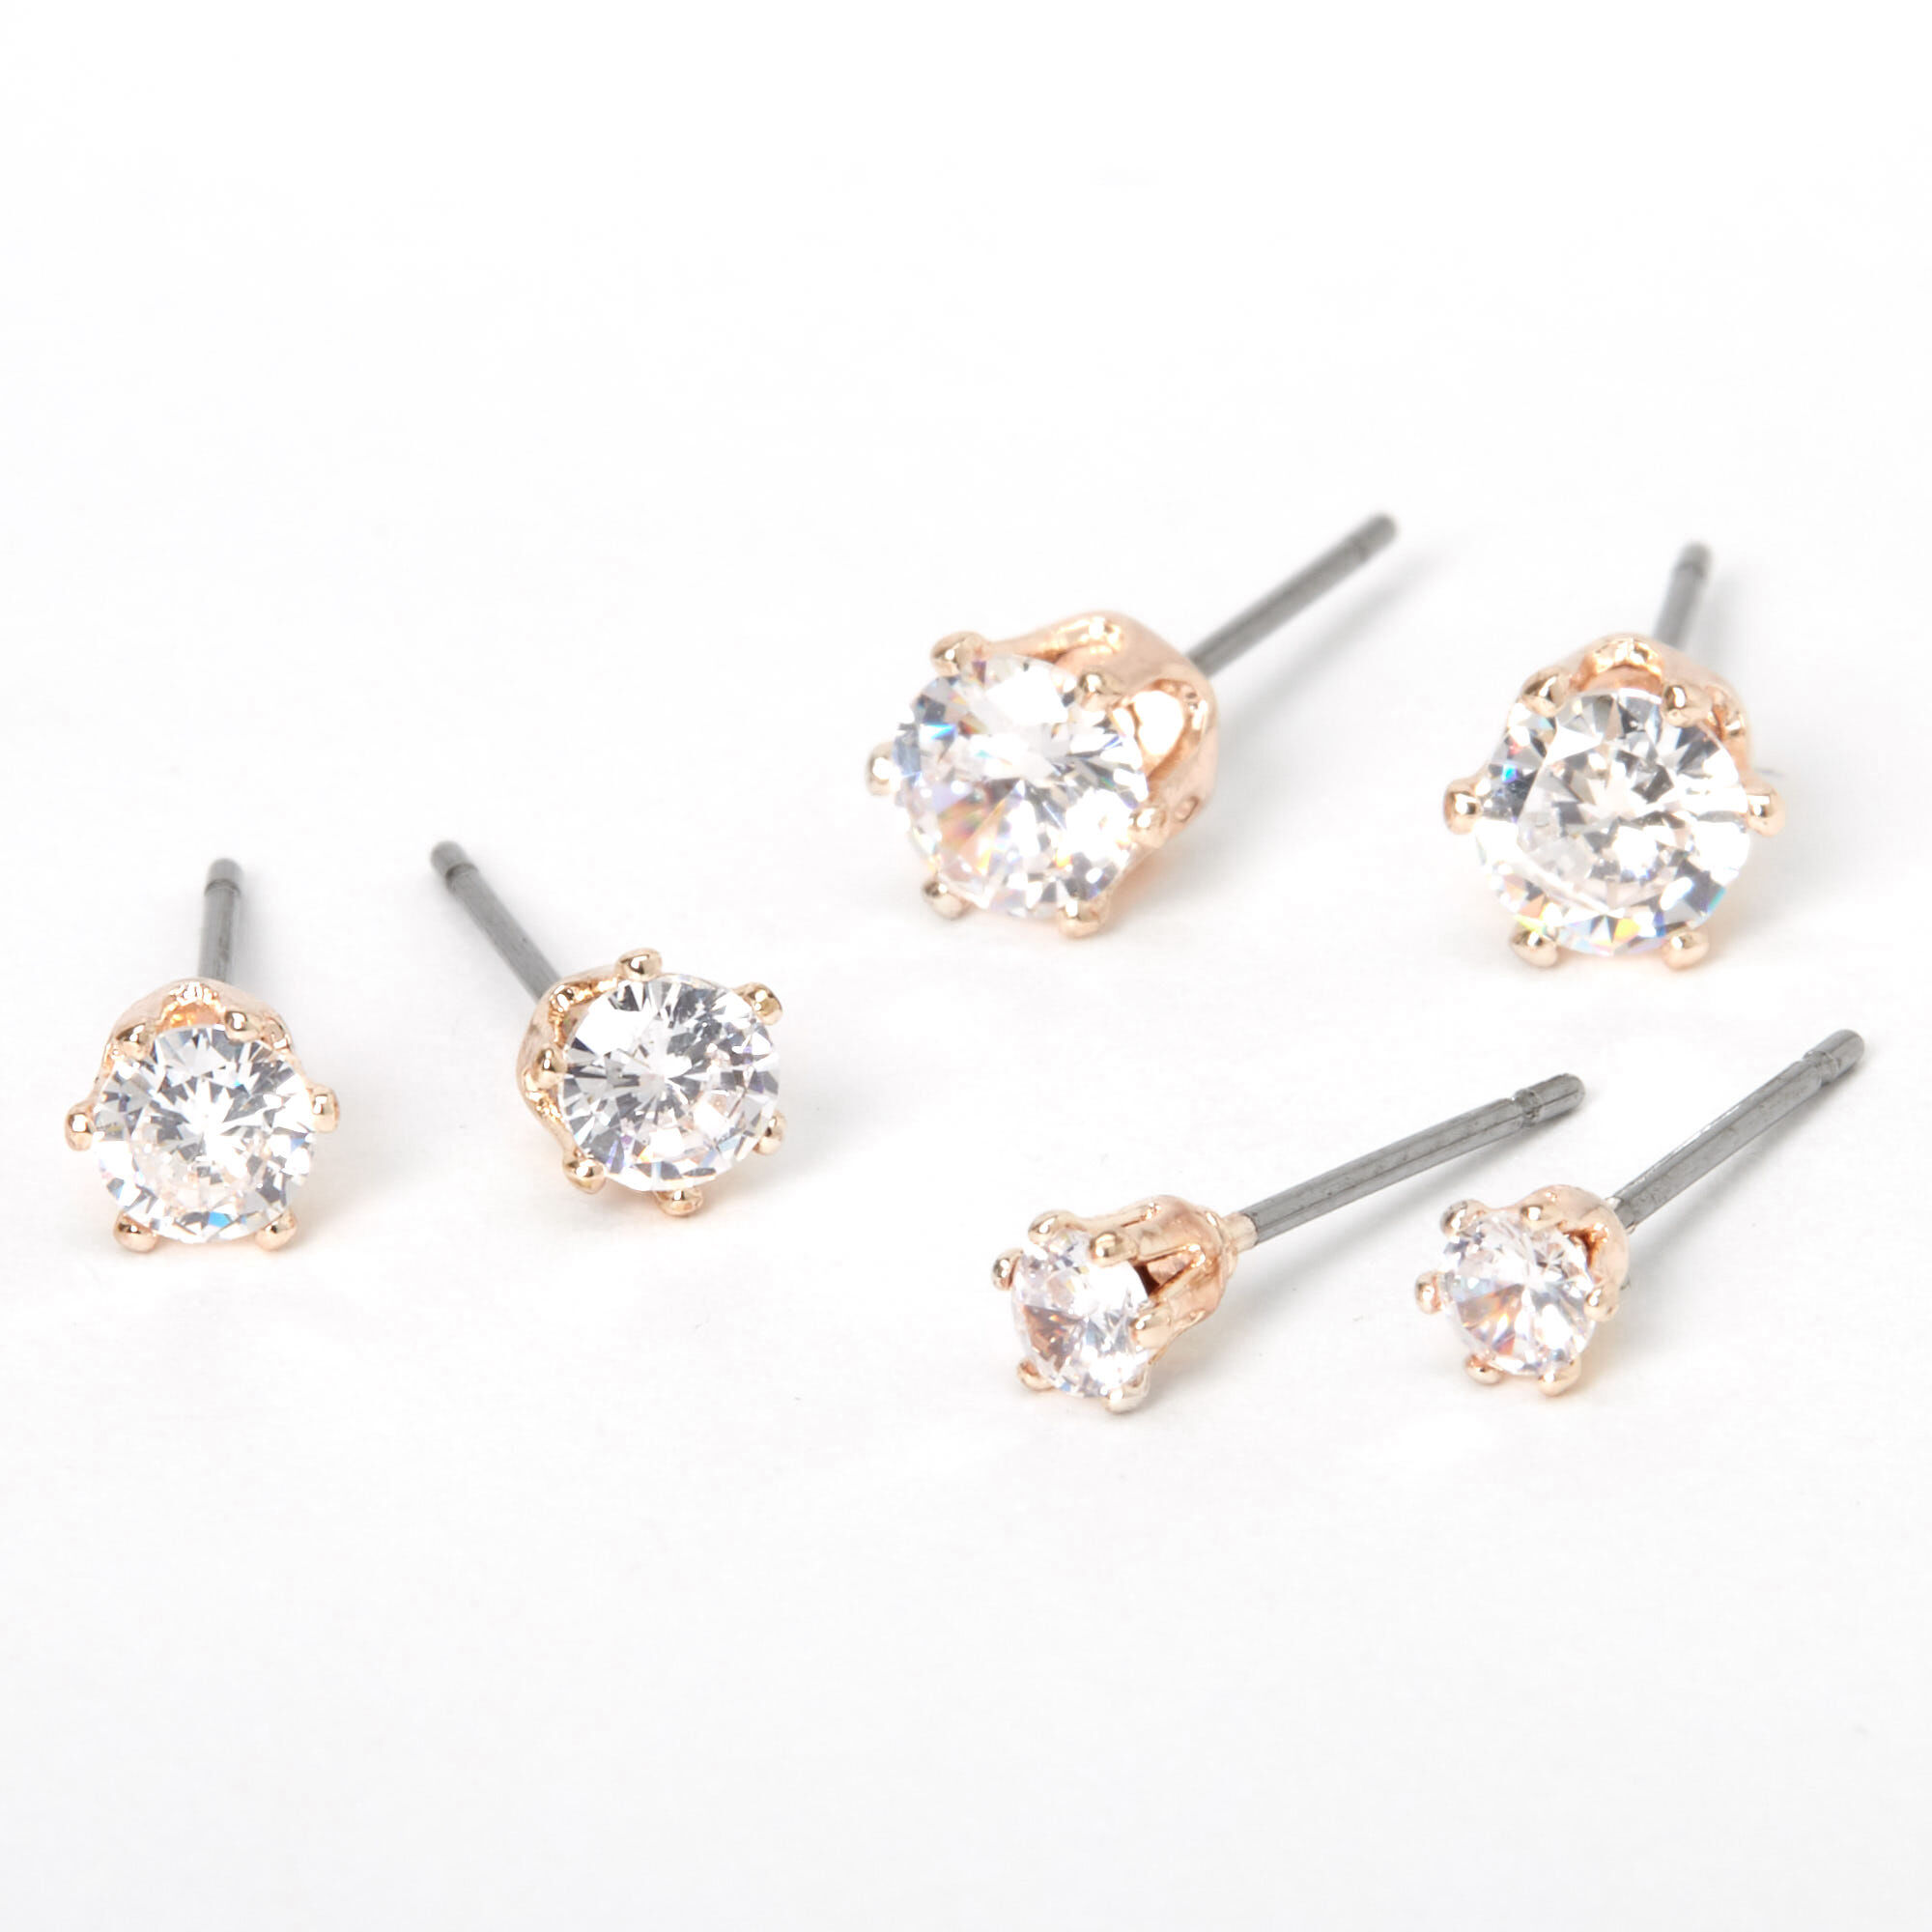 Aooaz Stainless Steel Stud Earrings Ladies Oval Crystal Set Cubic Zirconia Skull Stud Earrings